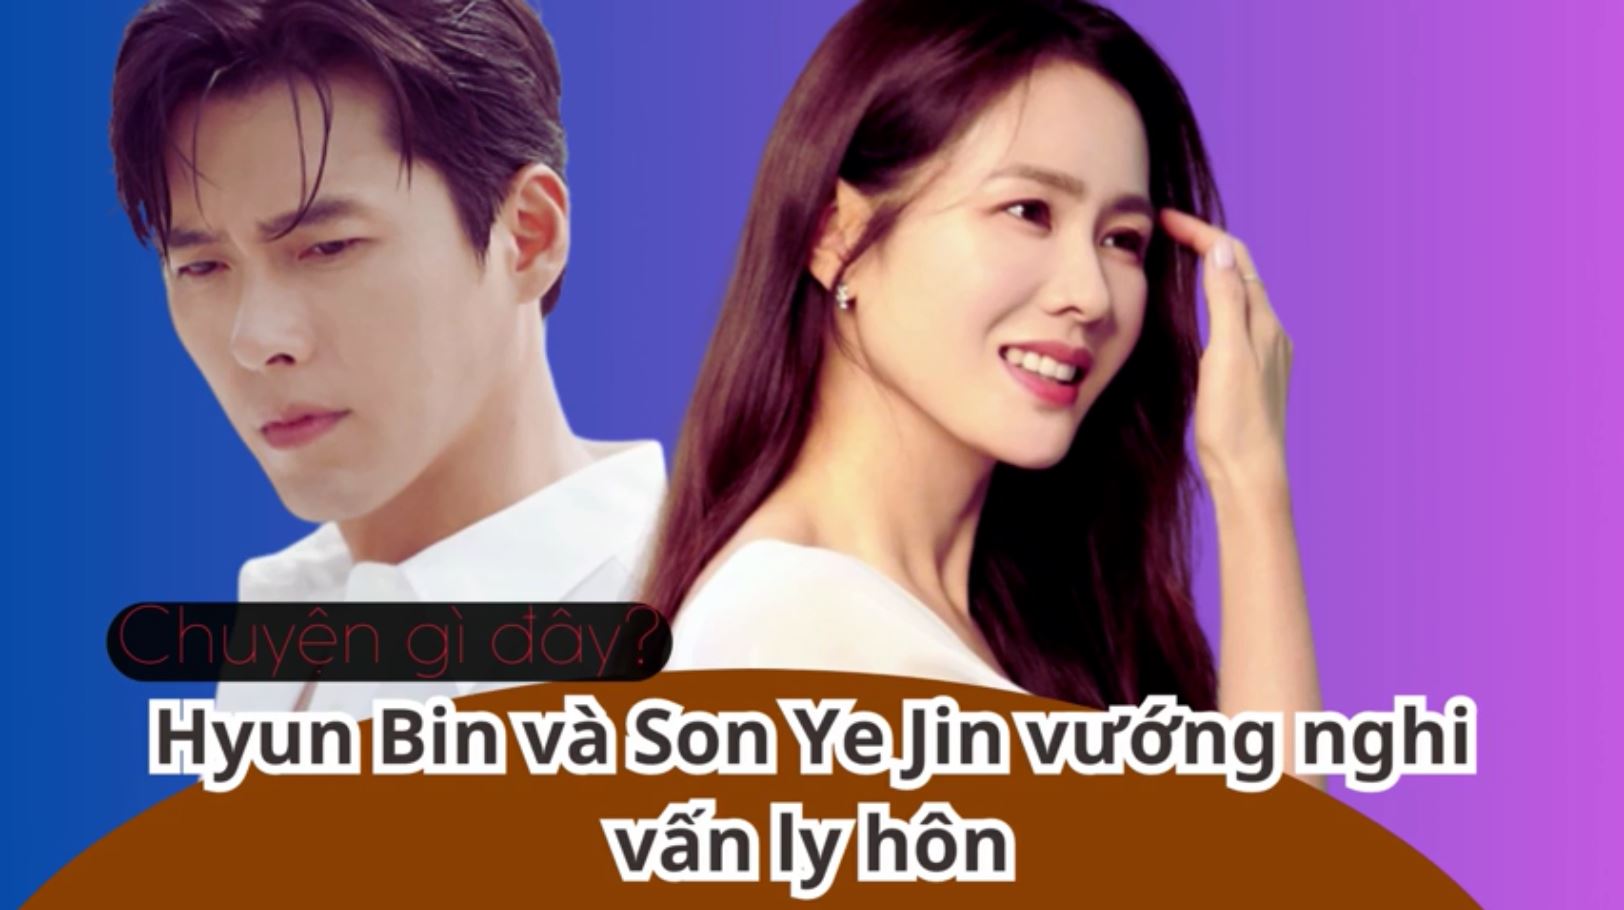 Hyun Bin và Son Ye Jin vướng nghi vấn ly hôn, chuyện gì đây?